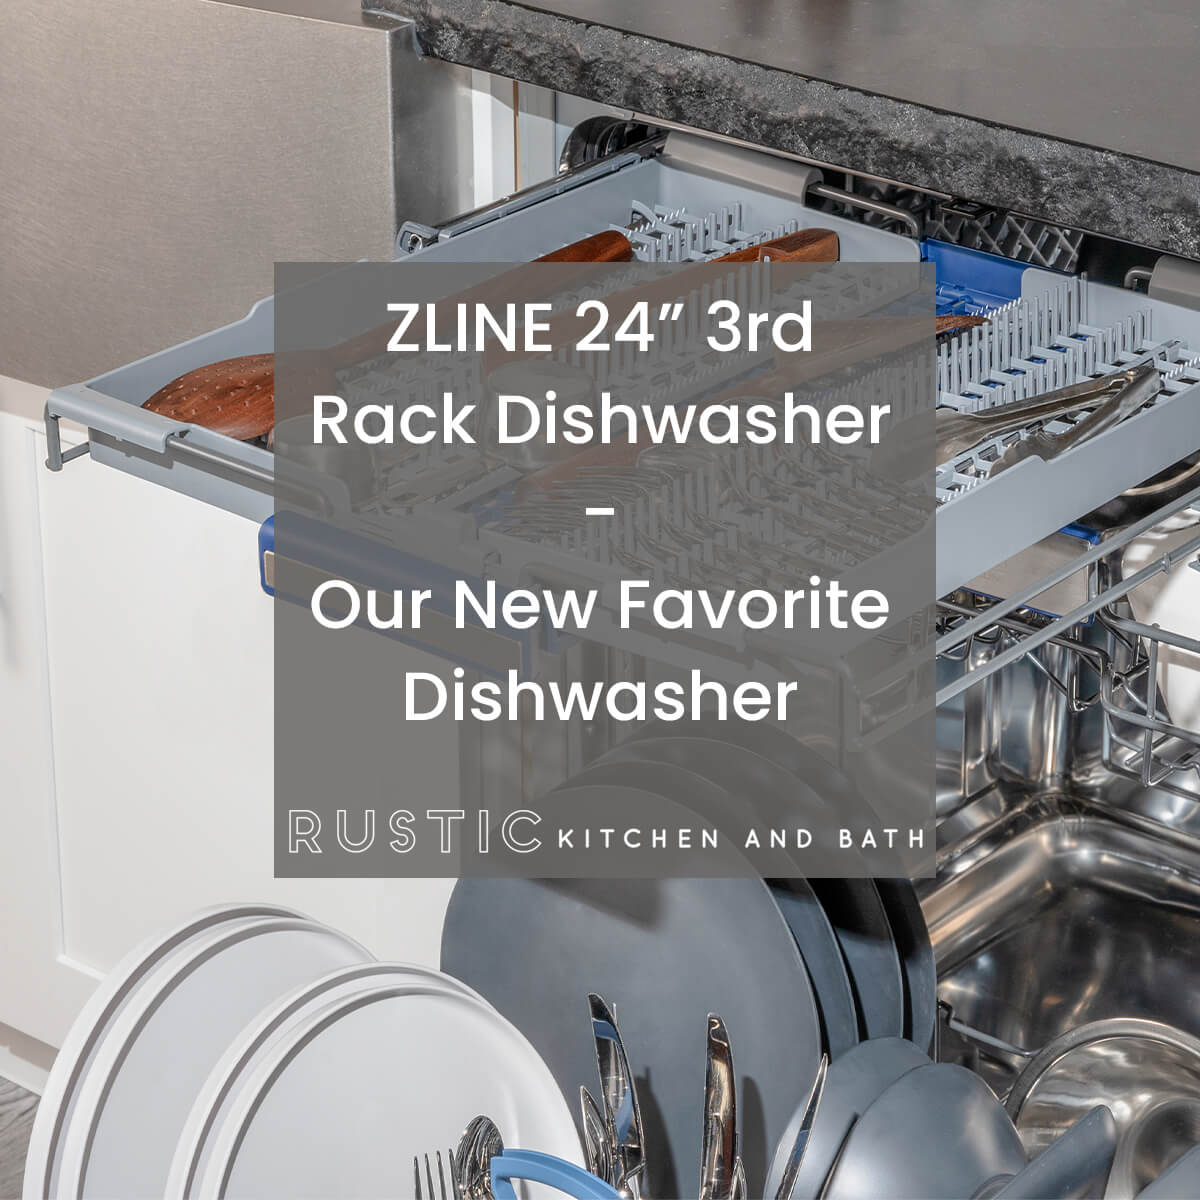 ZLINE 24” 3rd Rack Dishwasher - Our New Favorite Dishwasher